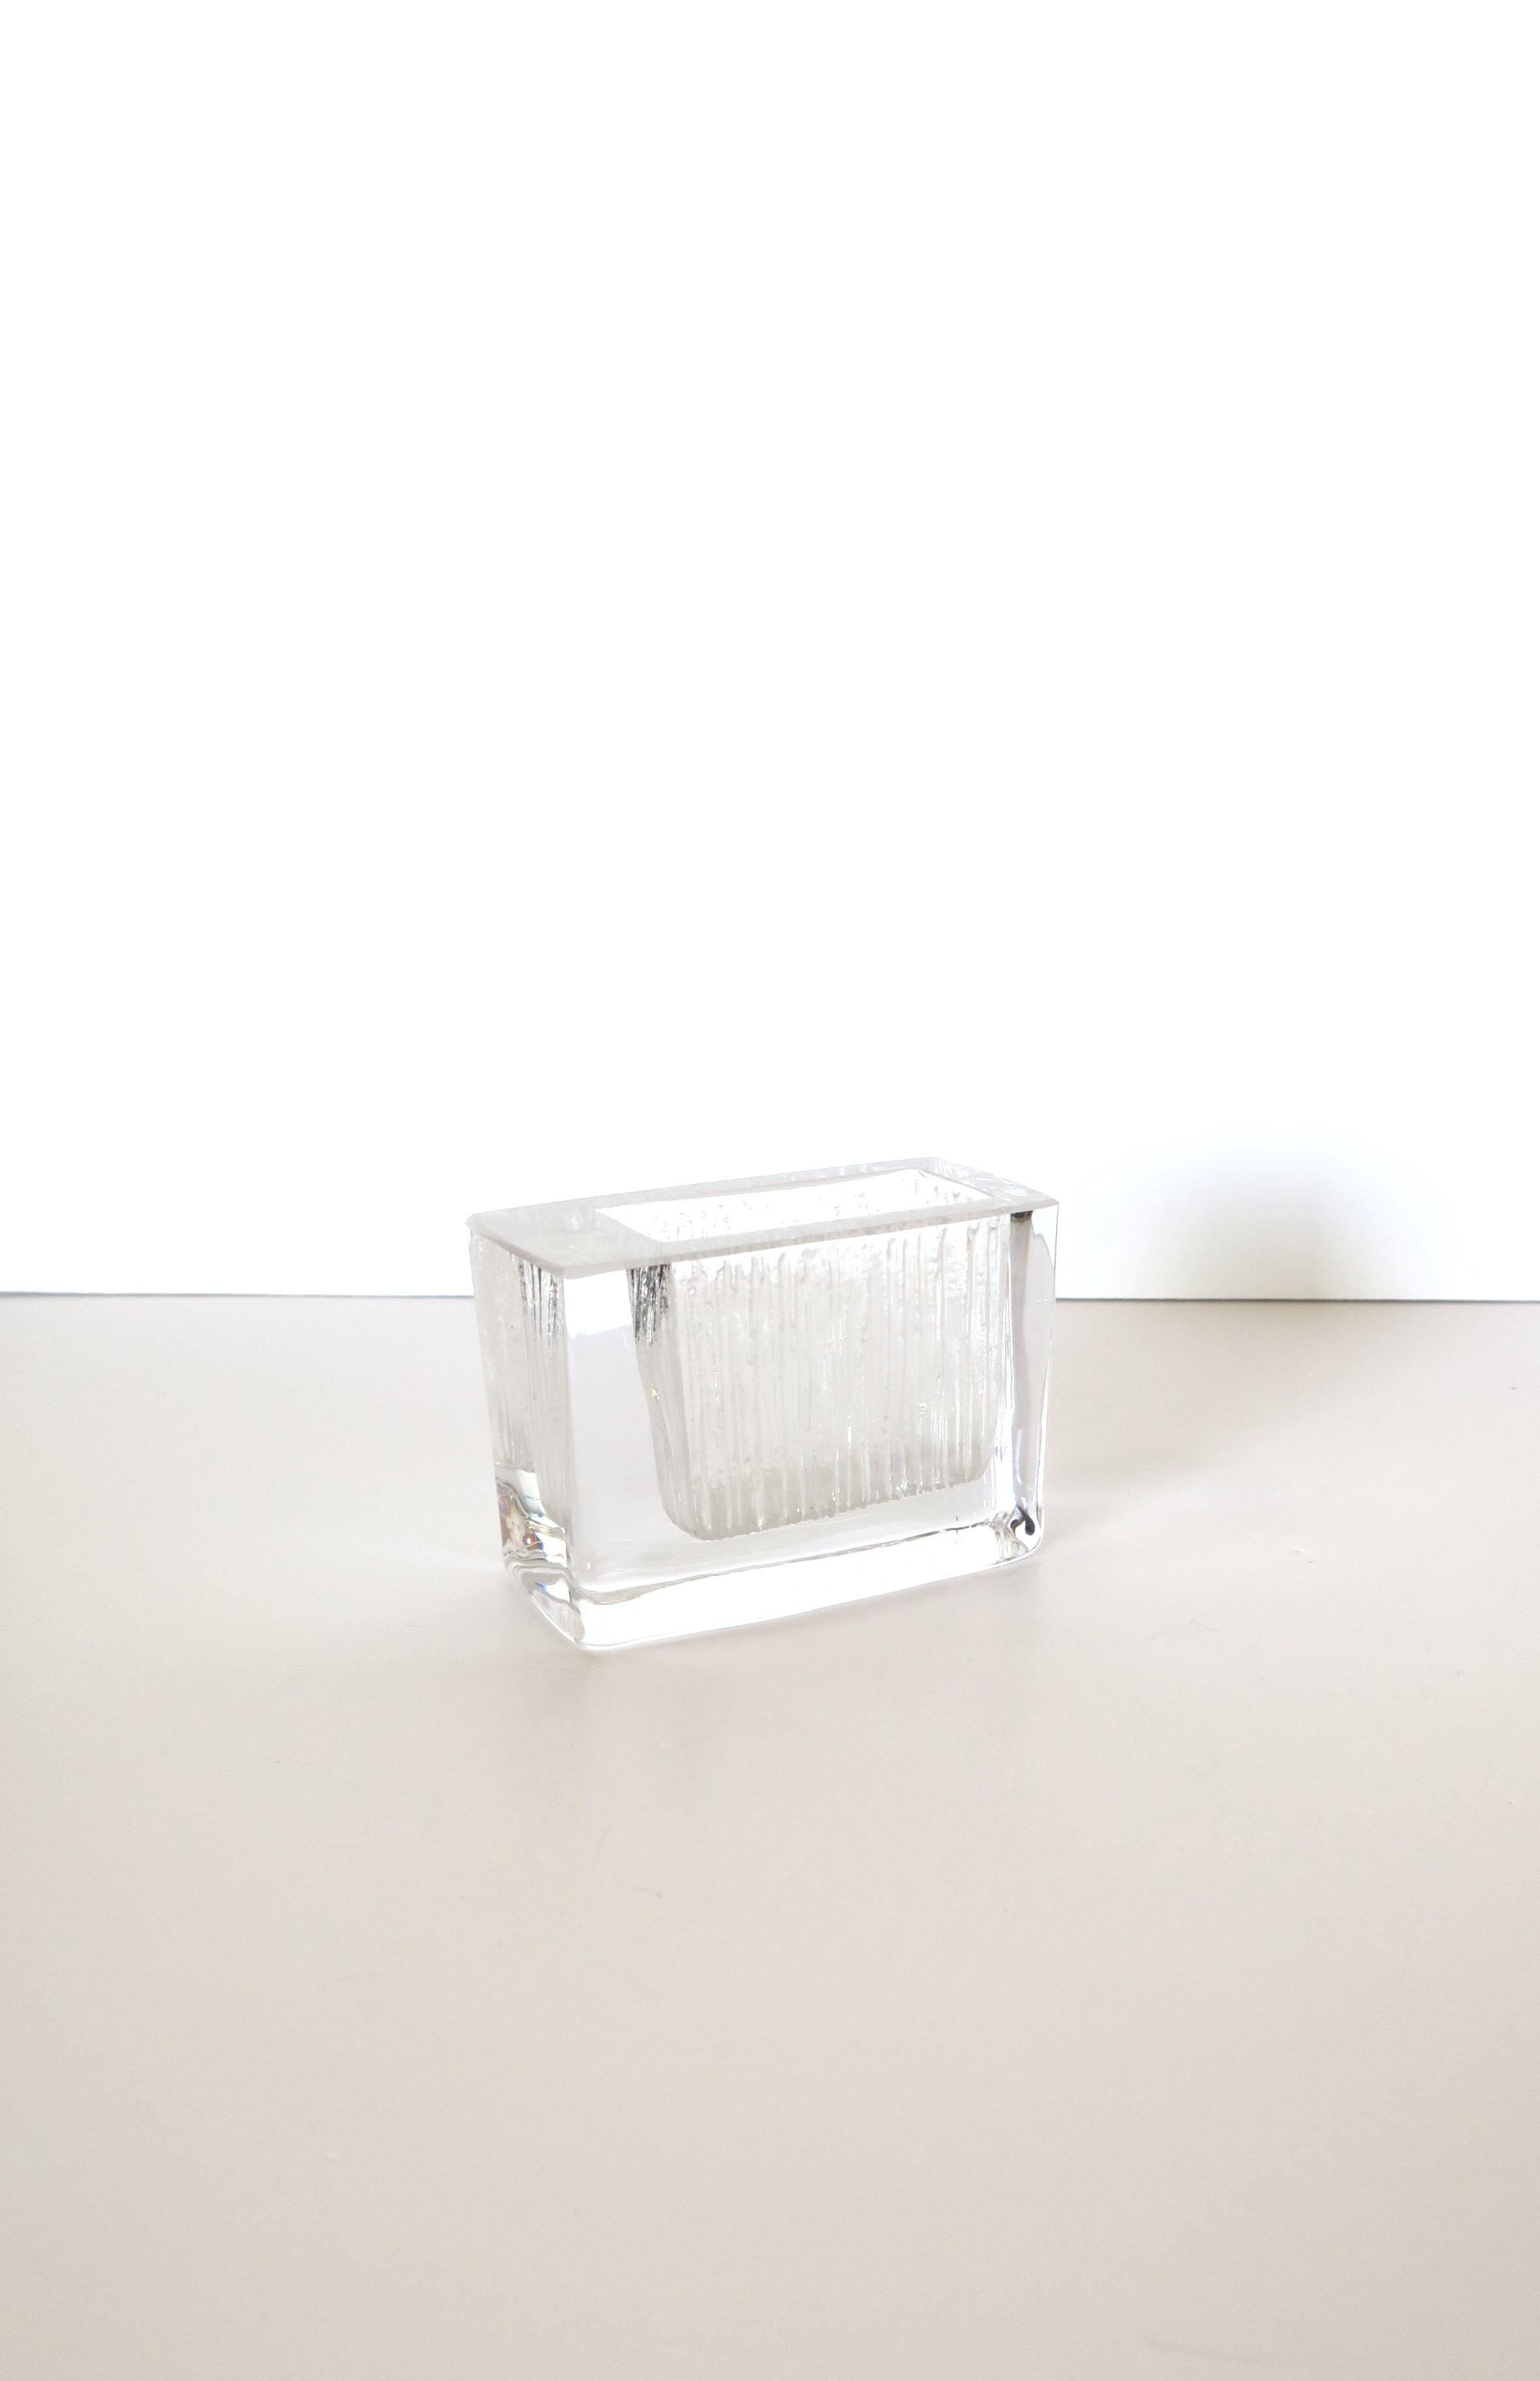 Magnifique petit vase en cristal français de la luxueuse Maison Daum, dans le style moderne minimaliste, vers le 20e siècle, France. La pièce est de forme rectangulaire avec un motif en verre gravé. Magnifique comme pièce unique ou avec de petites